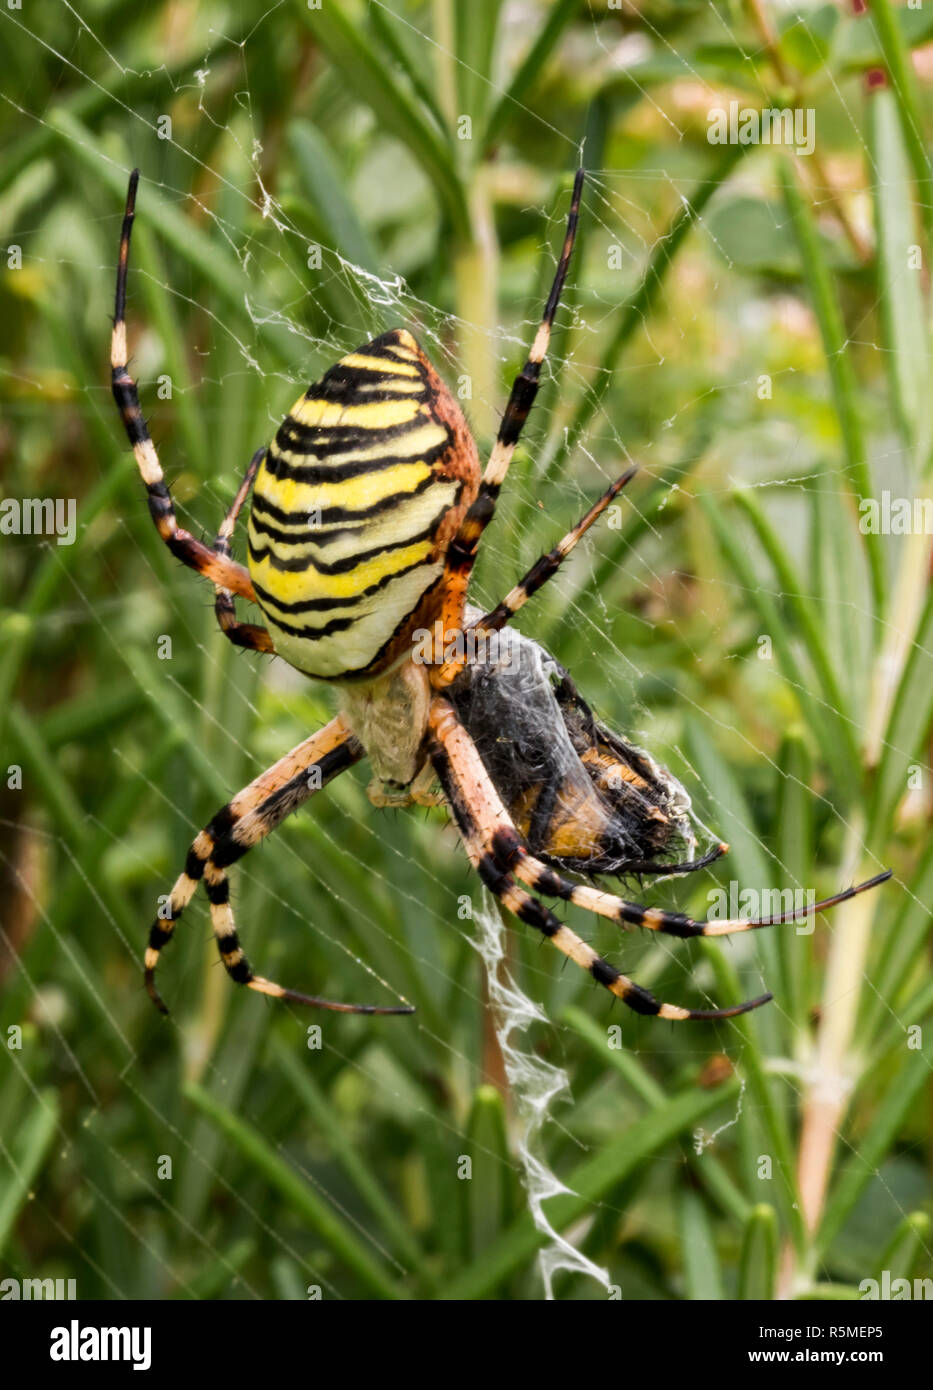 Grosse Wespe Spinne in ihrem Netz zwischen Wiese Blumen Stockfotografie -  Alamy